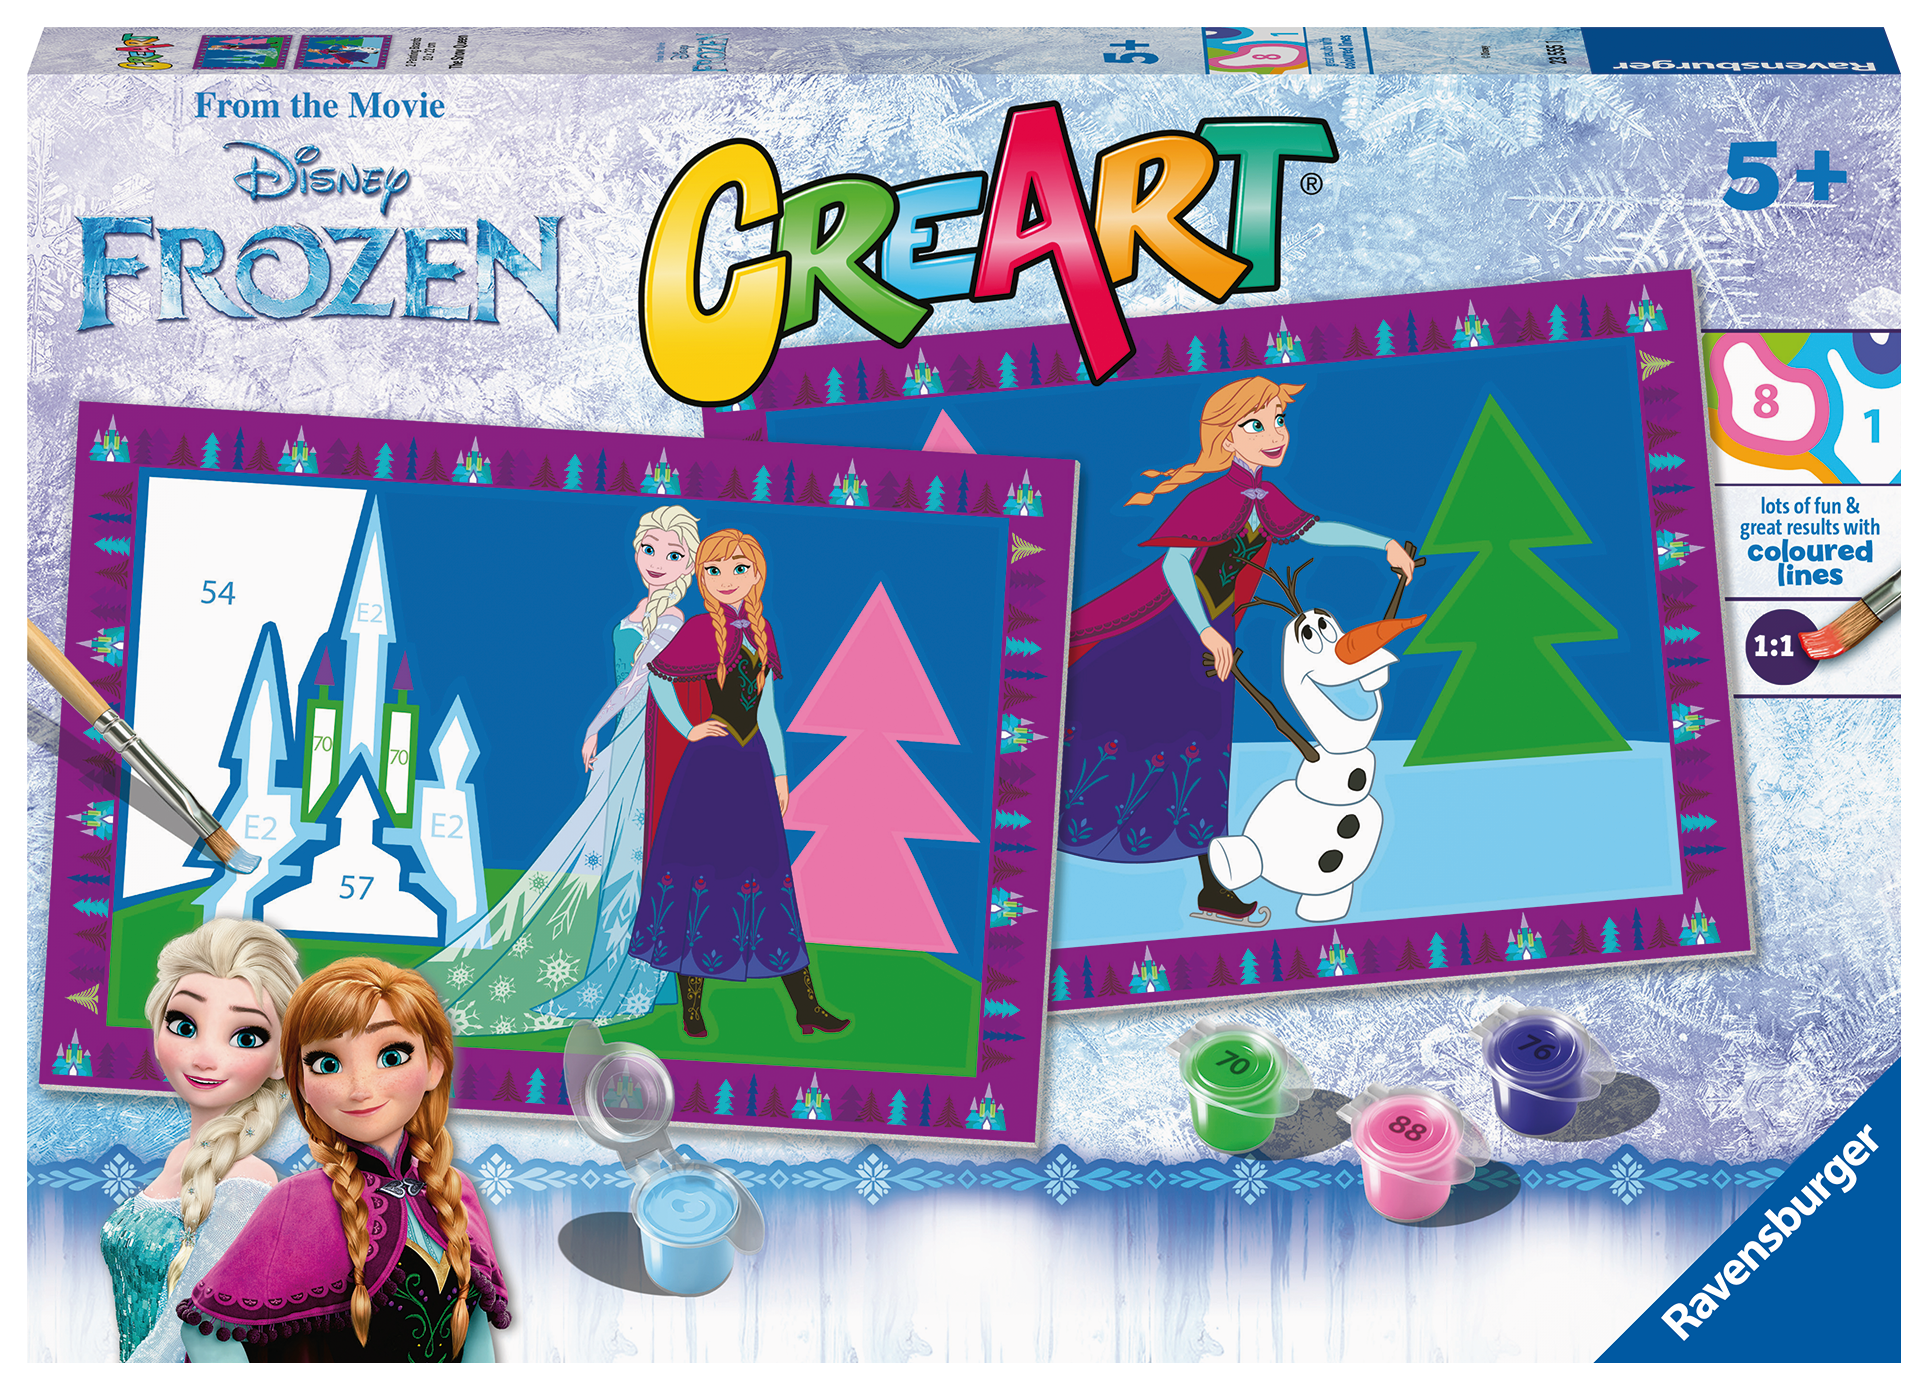 Ravensburer - creart serie junior, disney frozen, kit dipingere con i numeri, contiene 2 tavole prestampate, pennello, colori, gioco creativo per maschi e femmine dai 5+ anni di età - DISNEY PRINCESS, RAVENSBURGER, Frozen